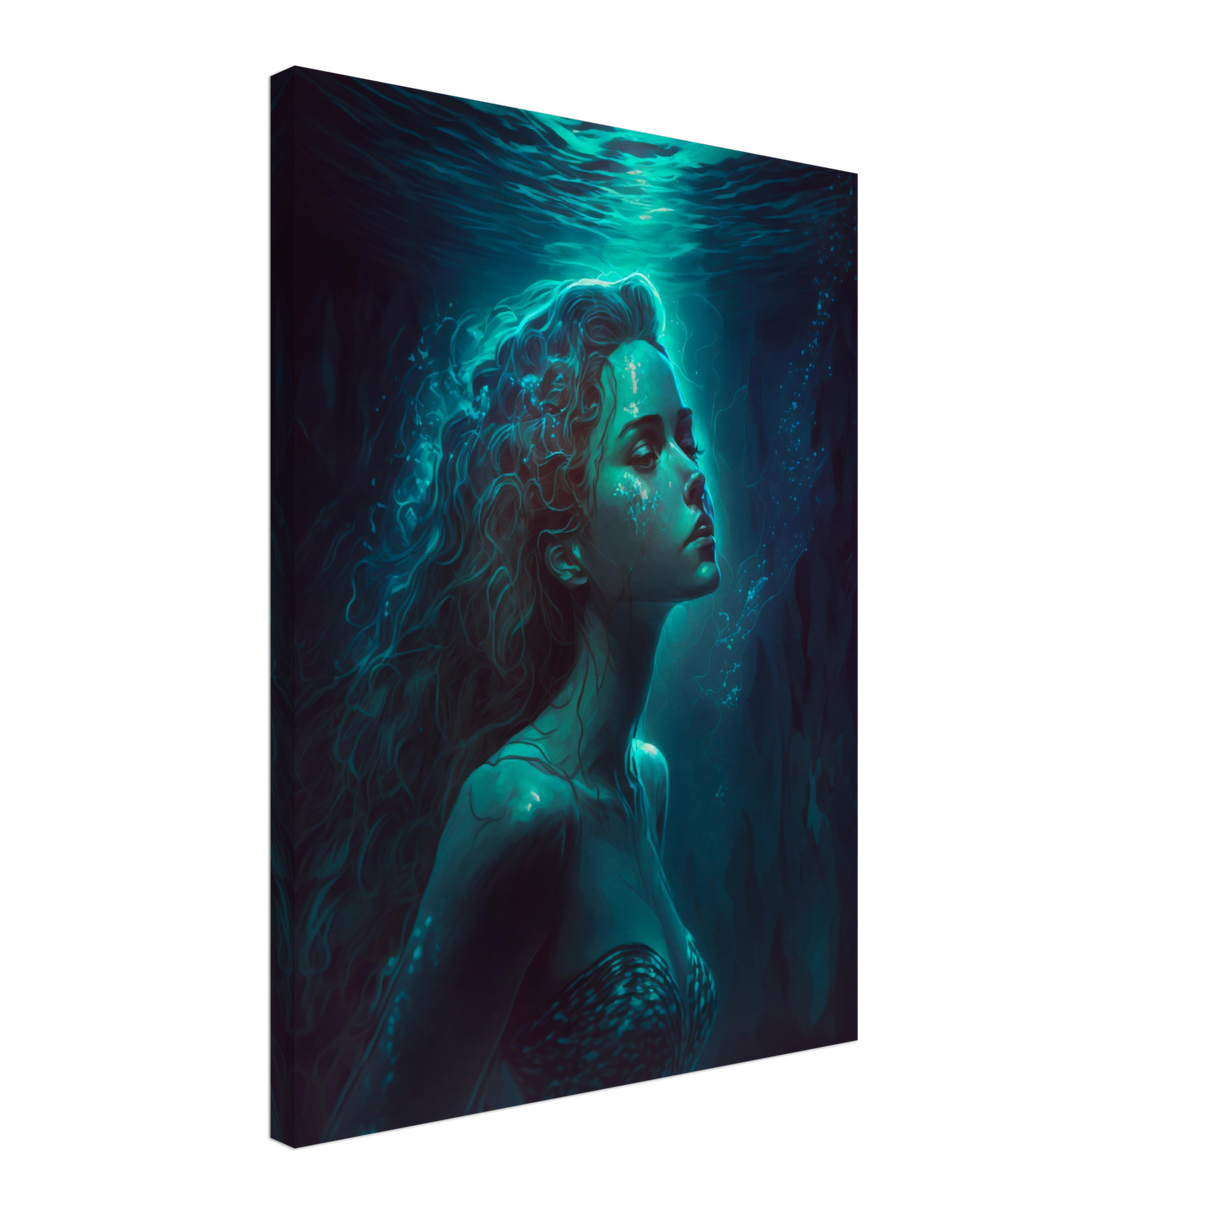 Aquatic Enchantress - WallLumi